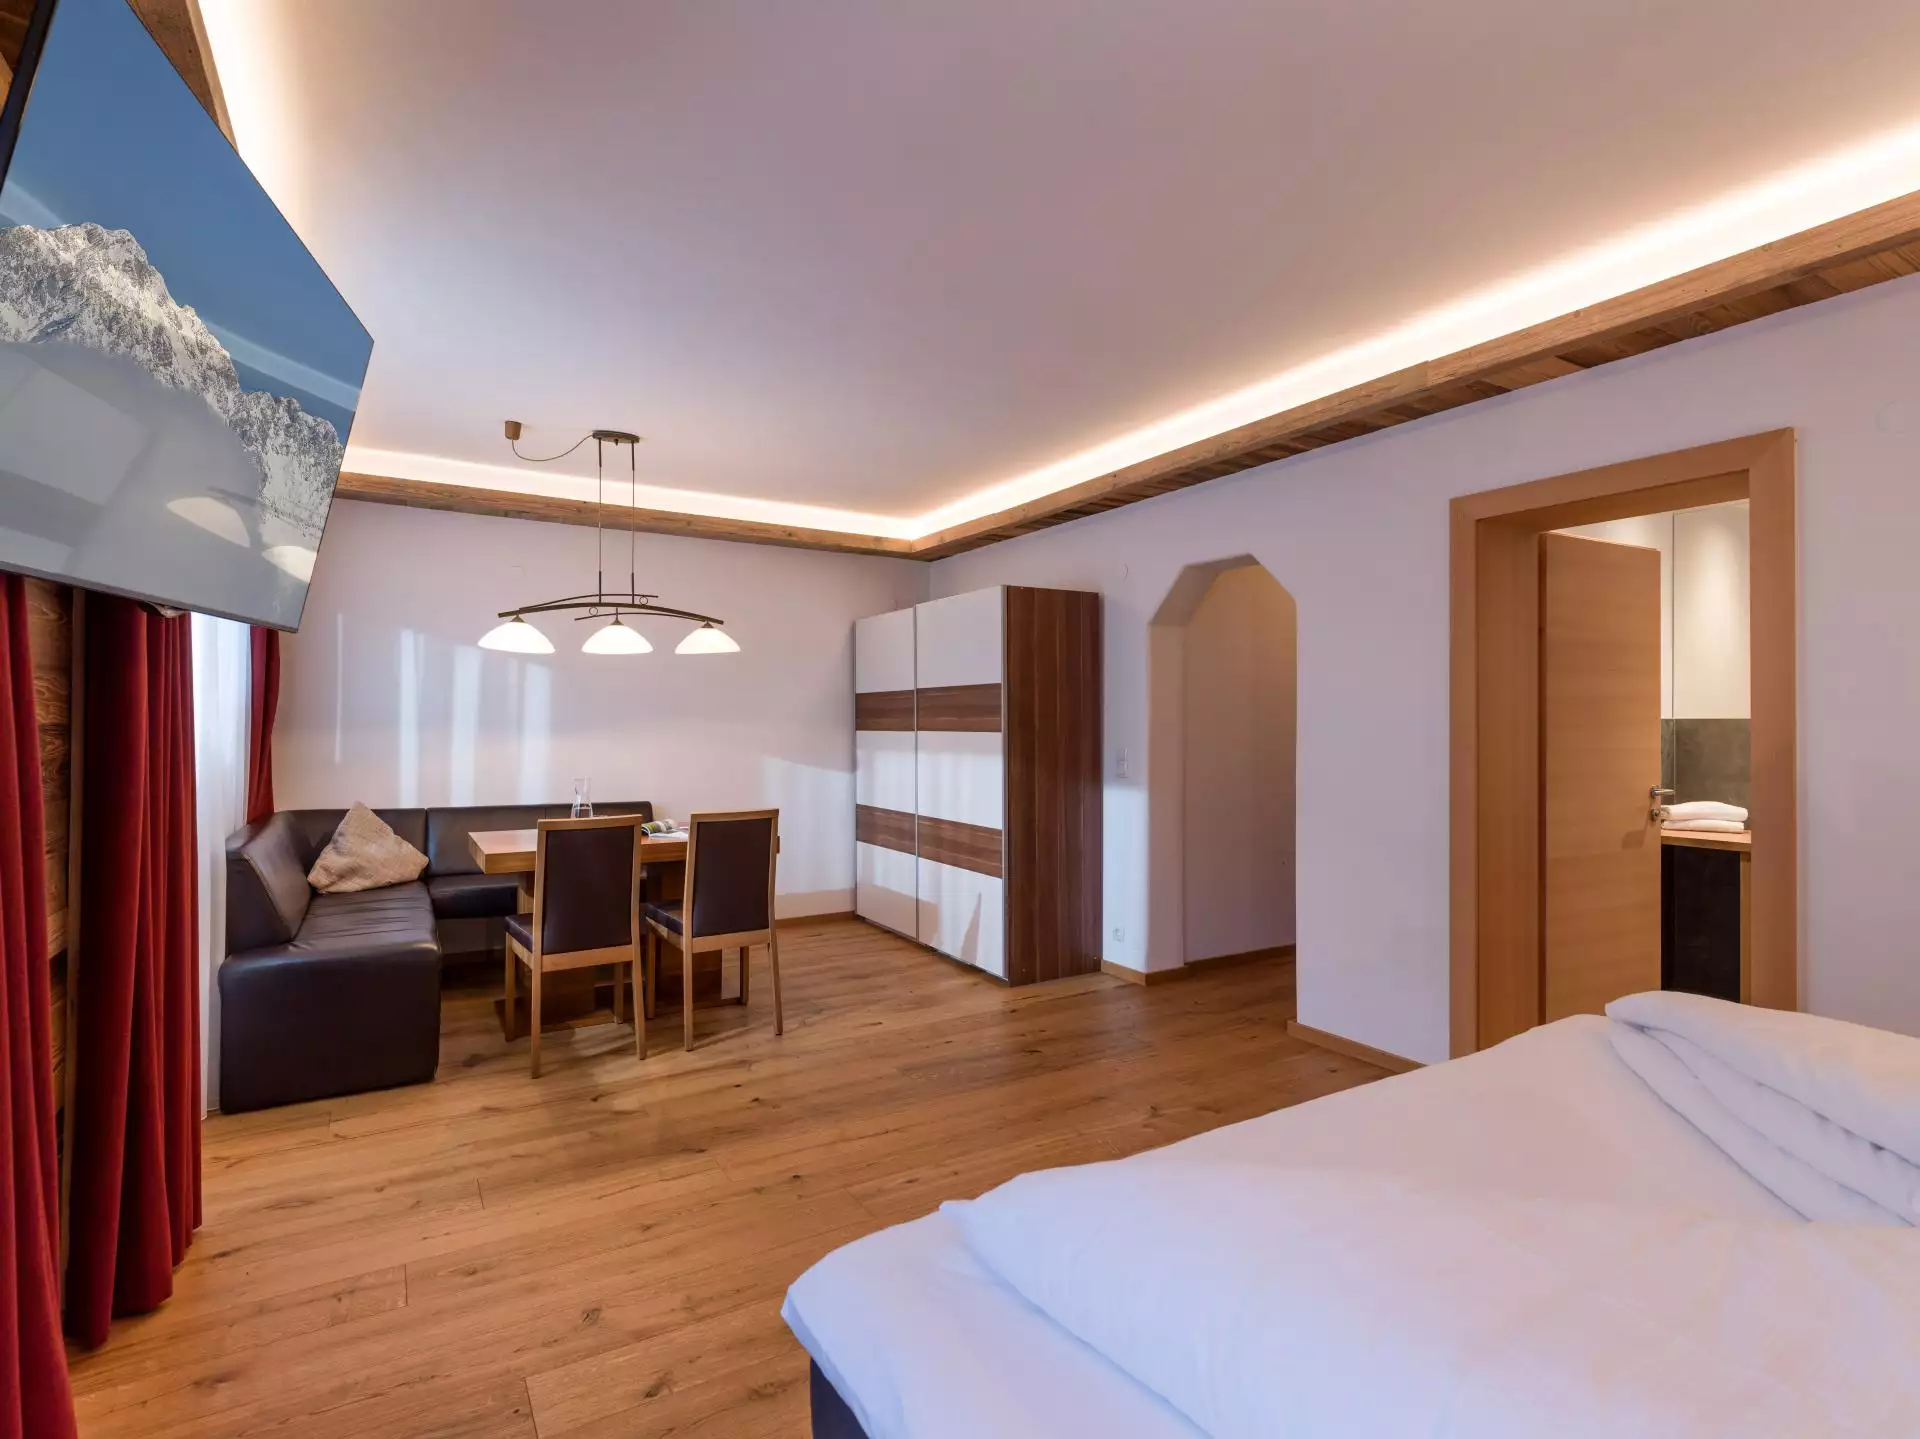 Superior Doppelzimmer Hotel #Hotel#Superior Zimmer#Wohneinheiten